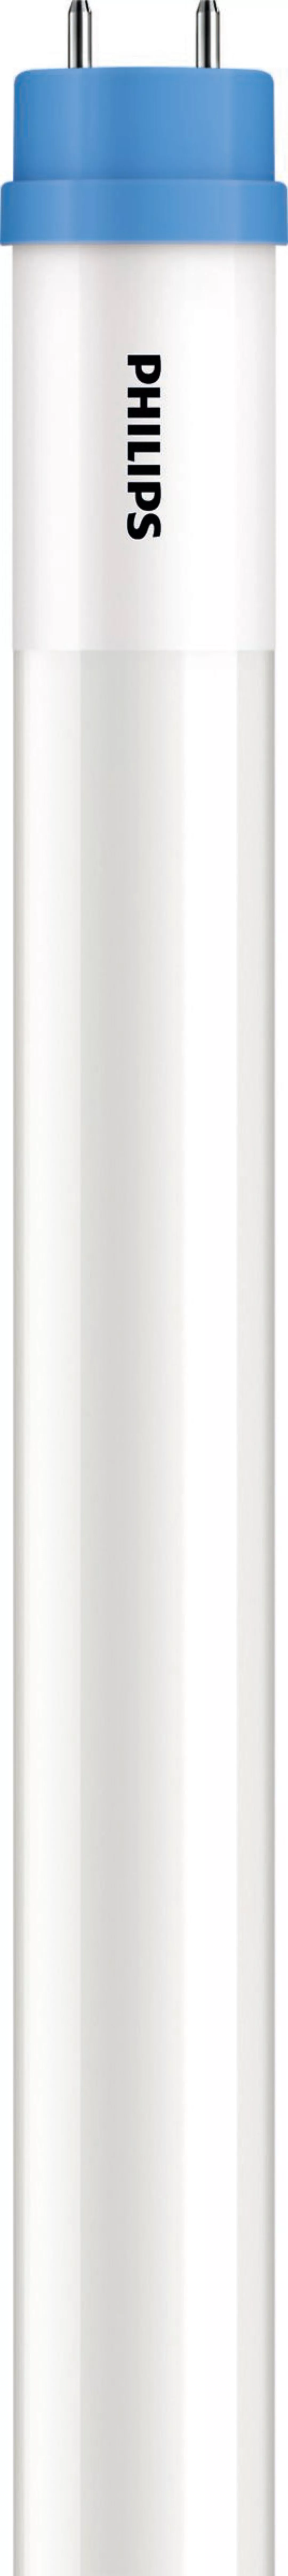 Philips Lighting LED-Tube T8 KVG/VVG G13, 840, 600mm CoreProLED #45977900 günstig online kaufen